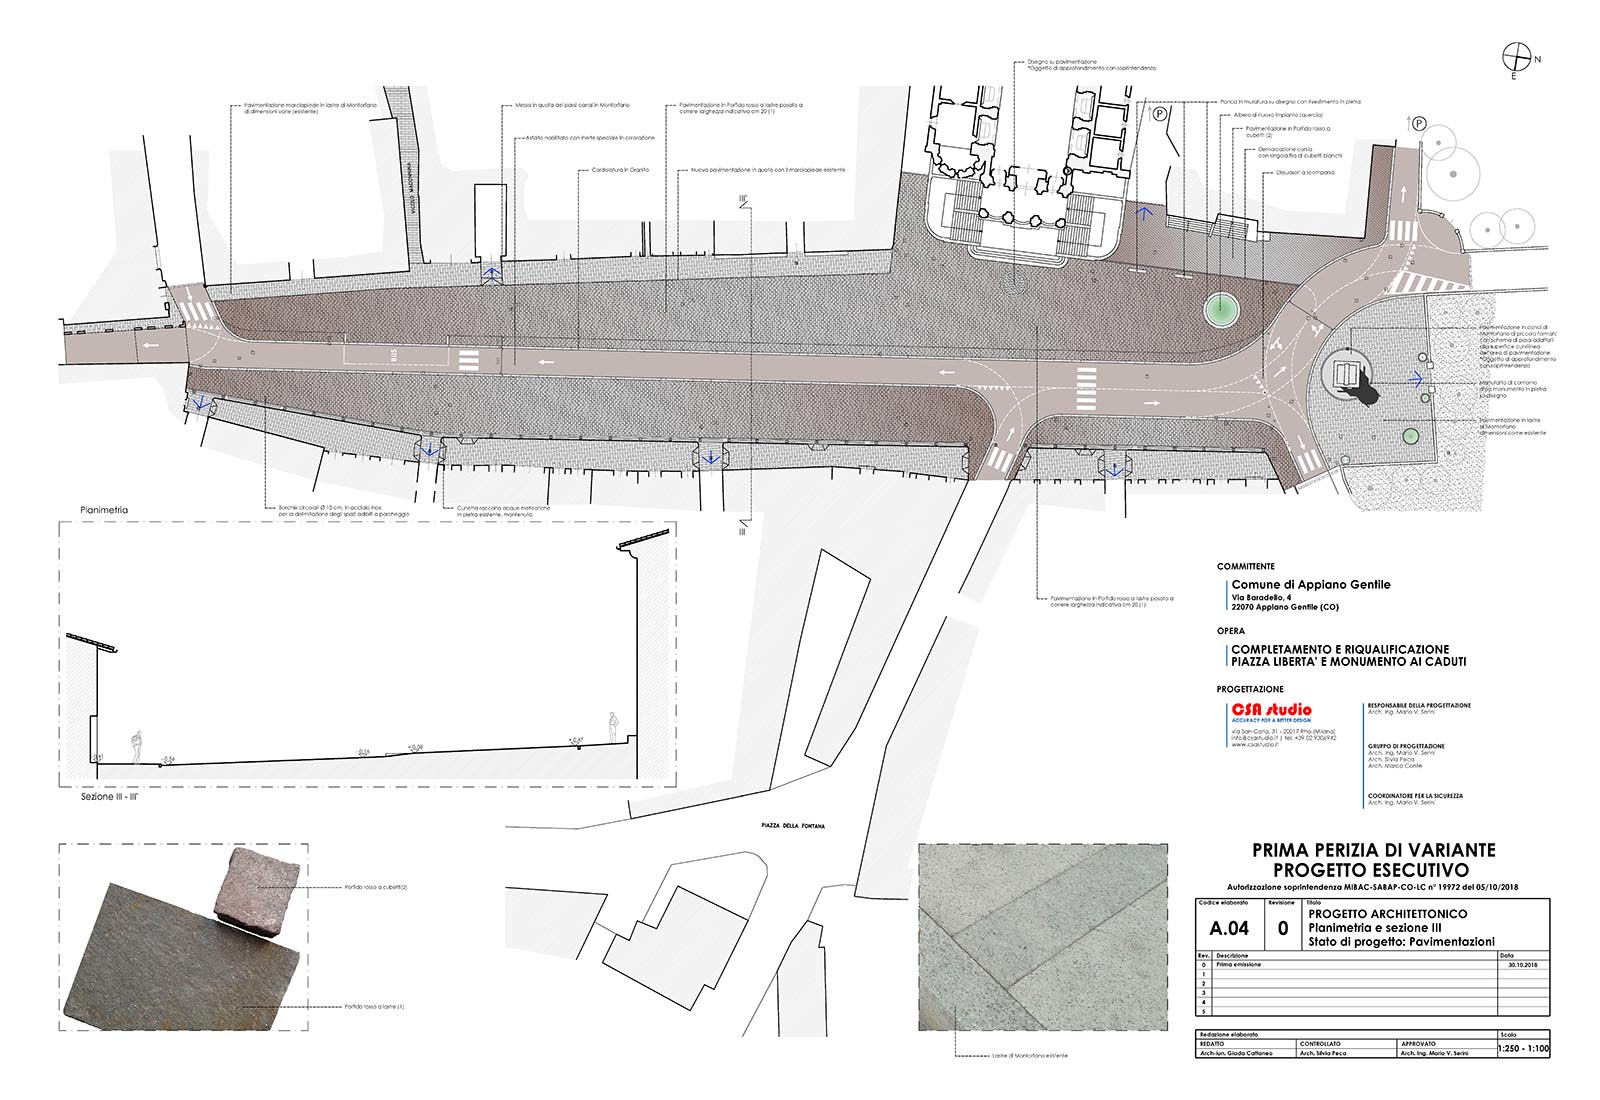 Piazza Libertà in Appiano Gentile - Project plan